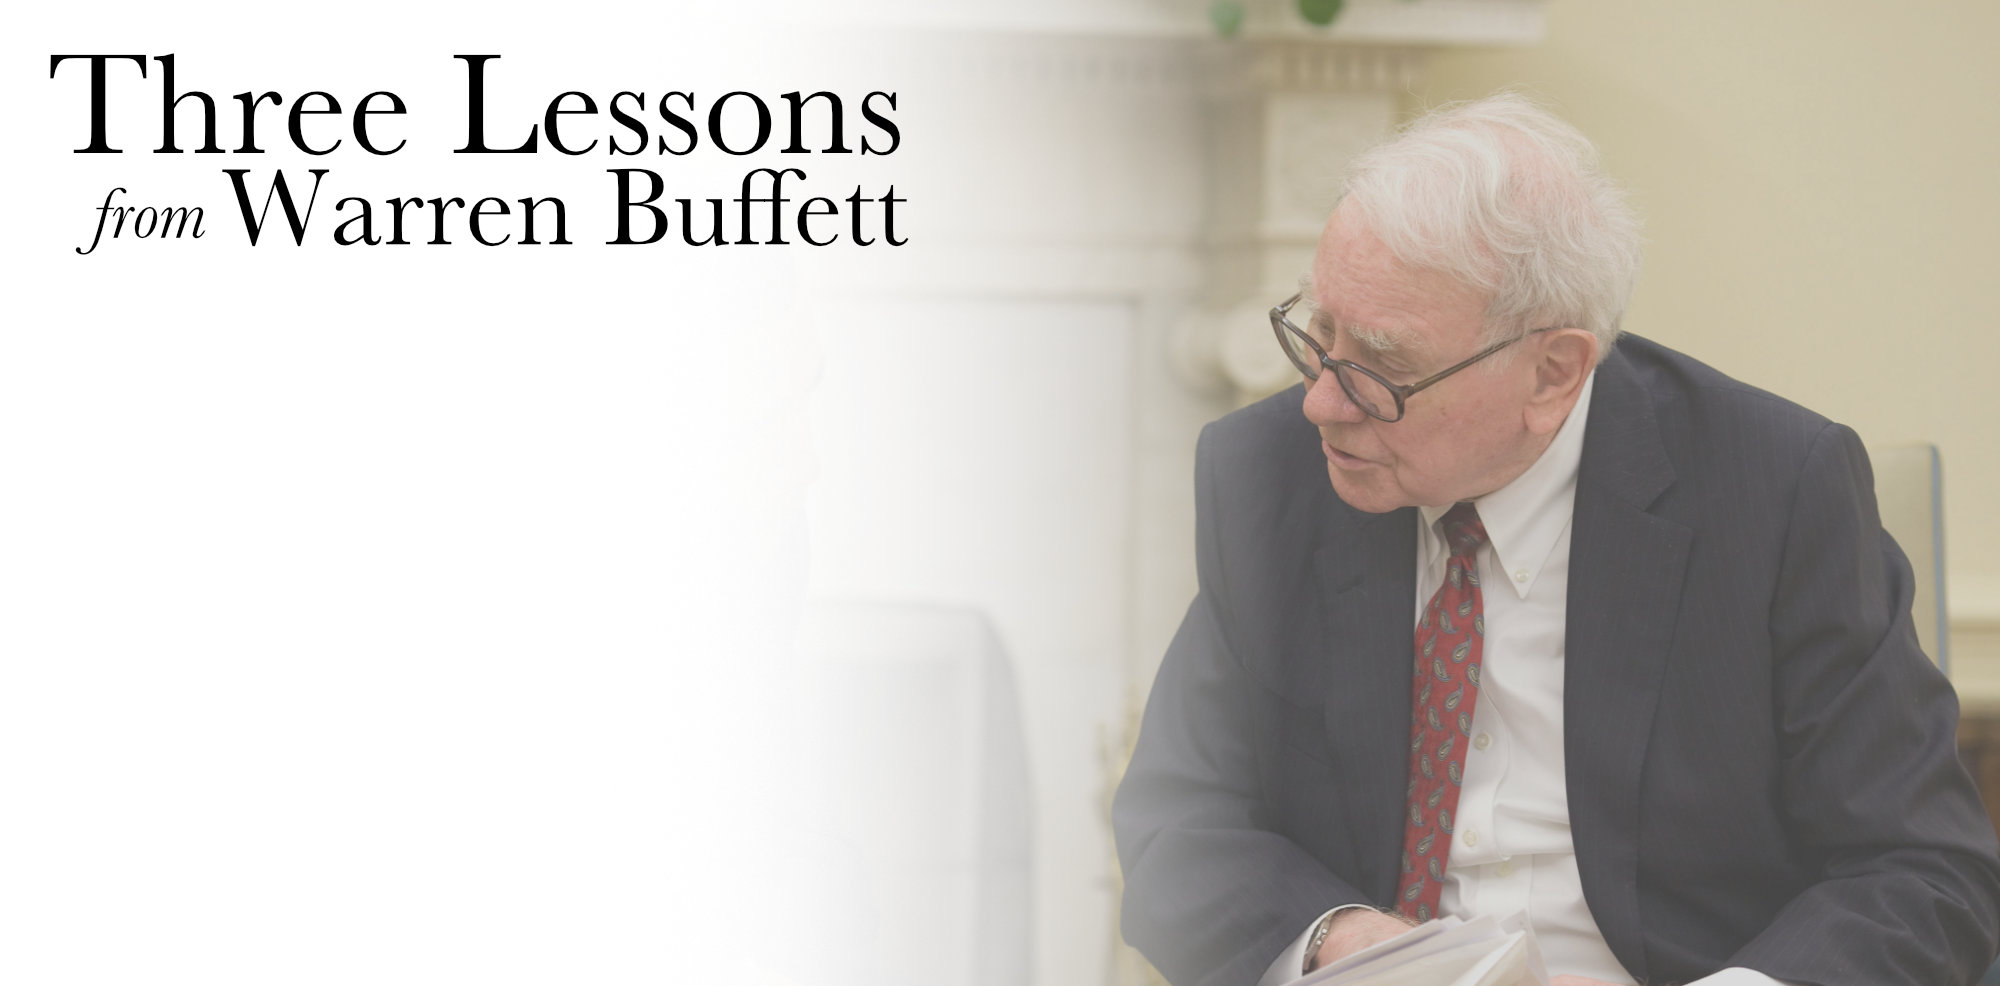 Three Lessons from Warren Buffett